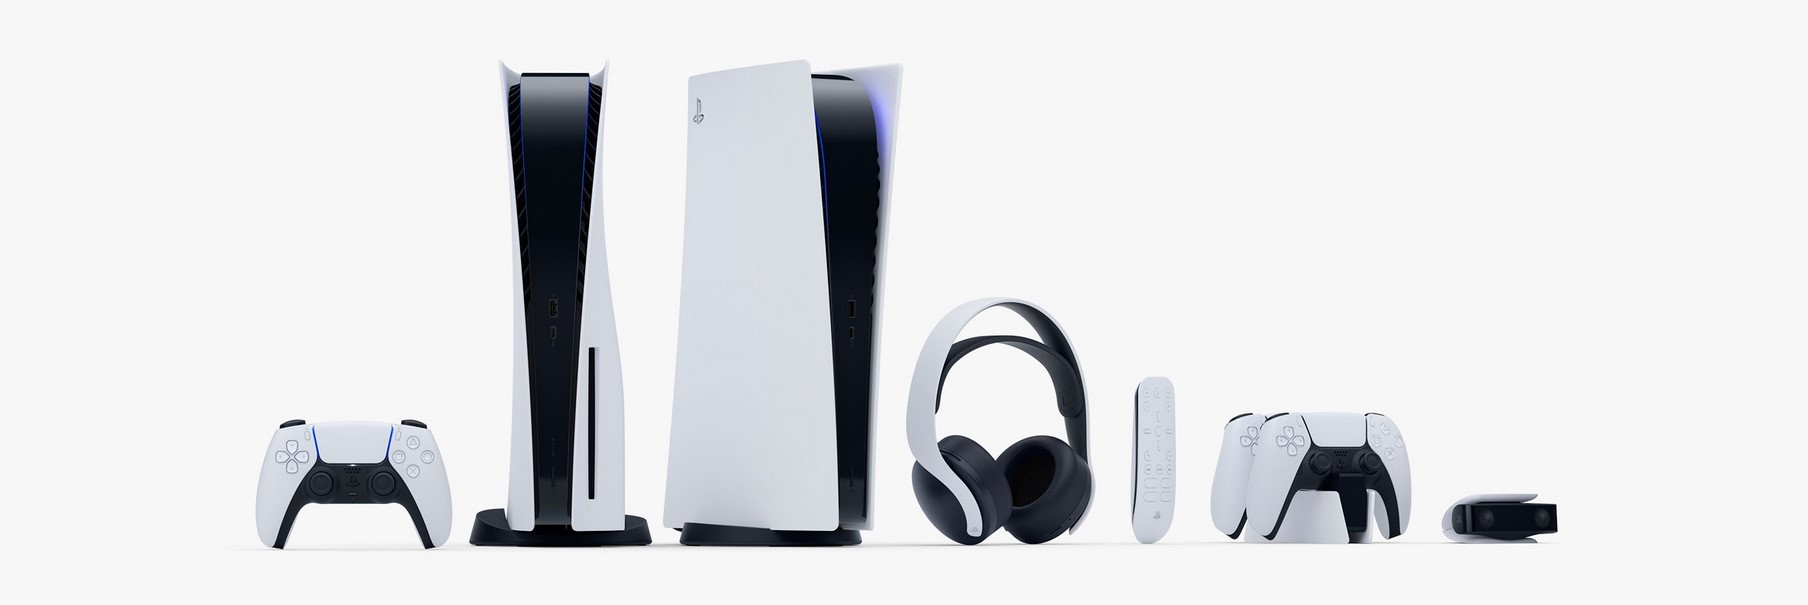 Sony está cerca de presentar unos auriculares con un diseño muy extraño